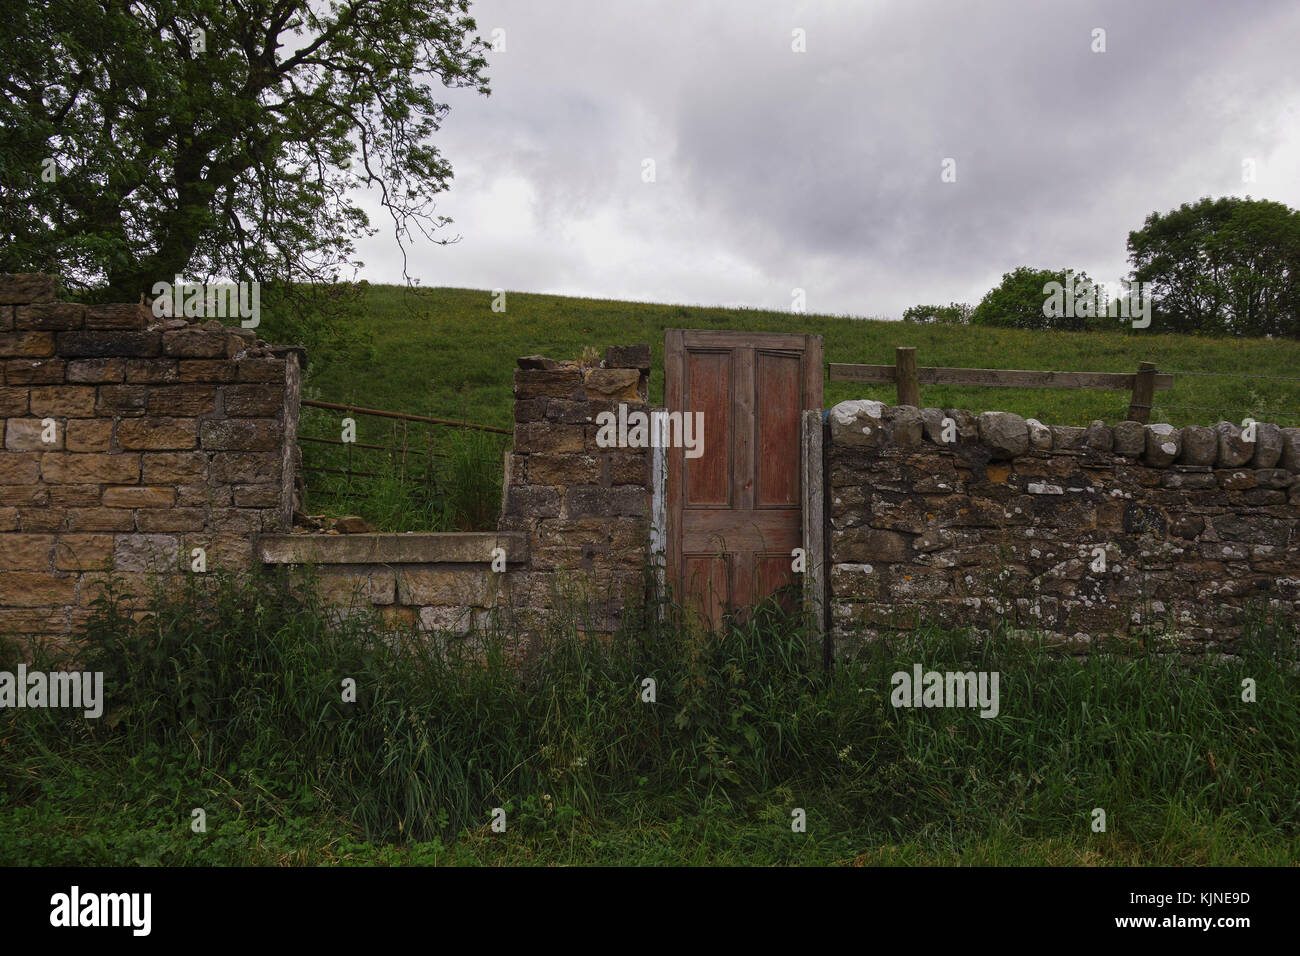 La porte de la campagne, dans la région de weardale dans le comté de Durham, Angleterre du Nord-Est. Une porte en bois est incorporée dans le mur de pierres sèches. Banque D'Images